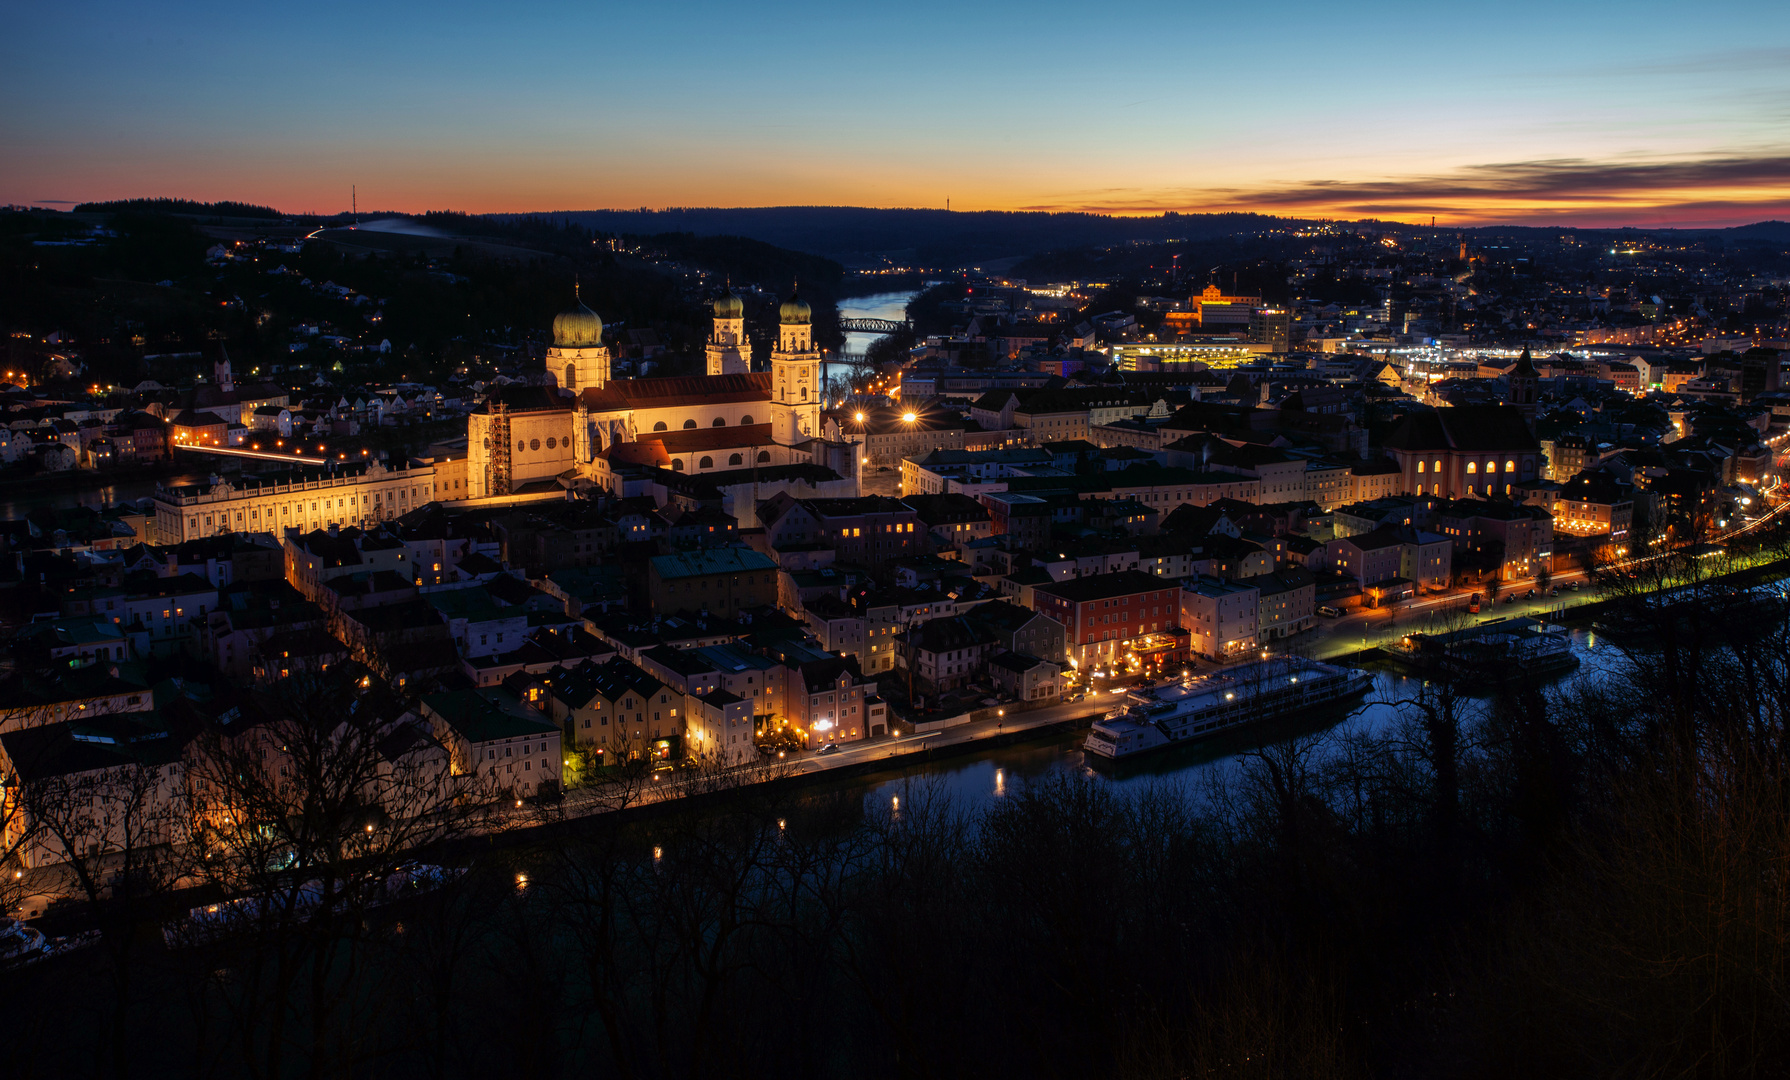 Dreiflüsse Stadt Passau